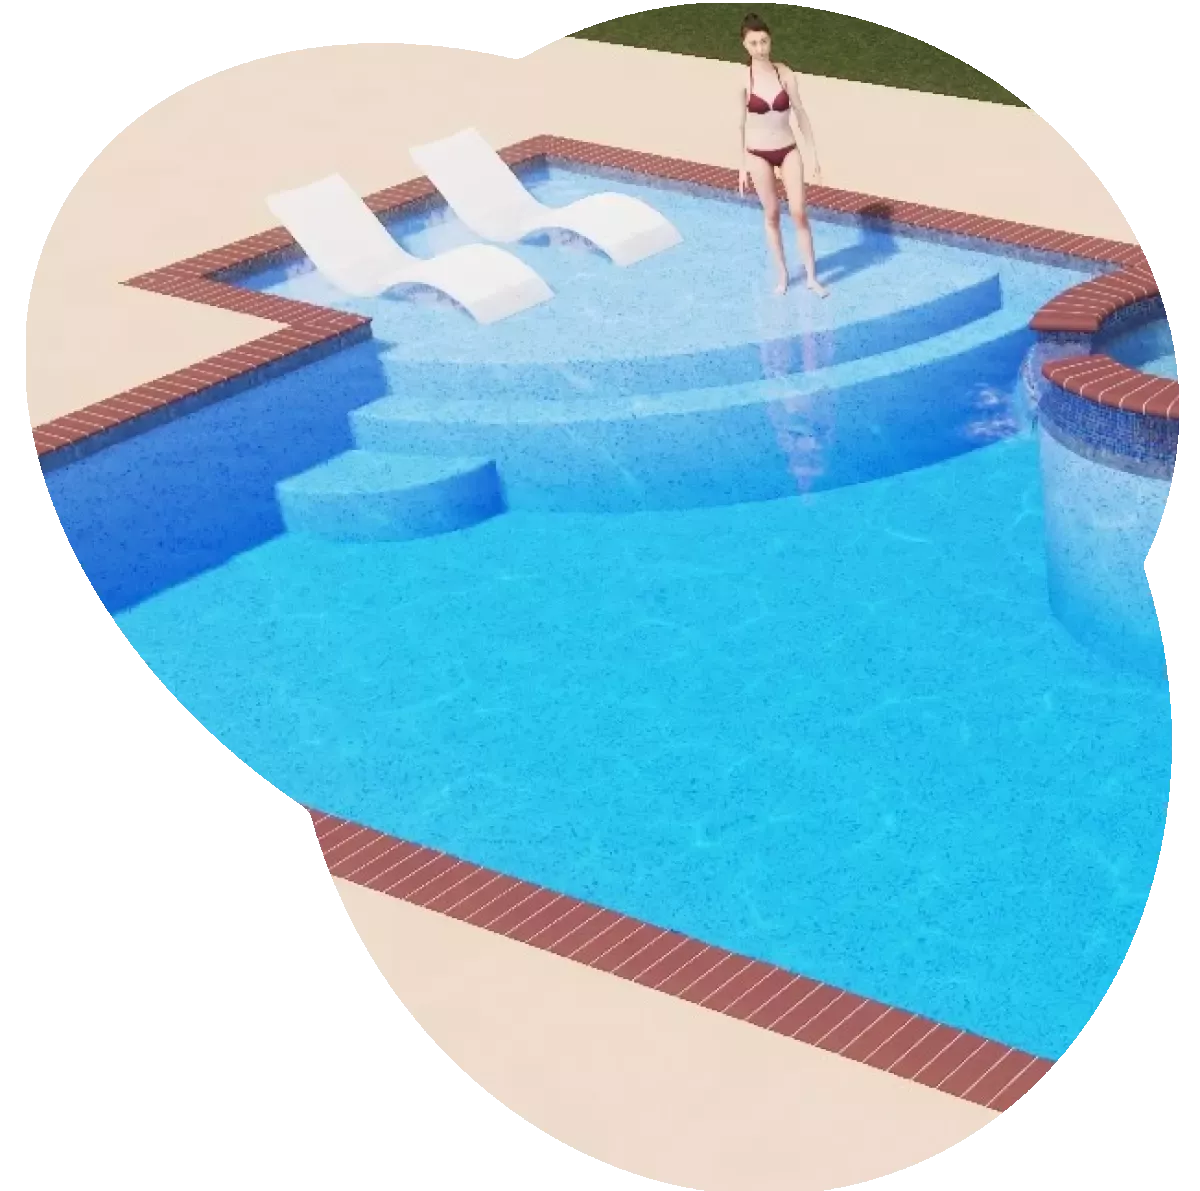 A screenshot of a gunite pool in a pool design software.